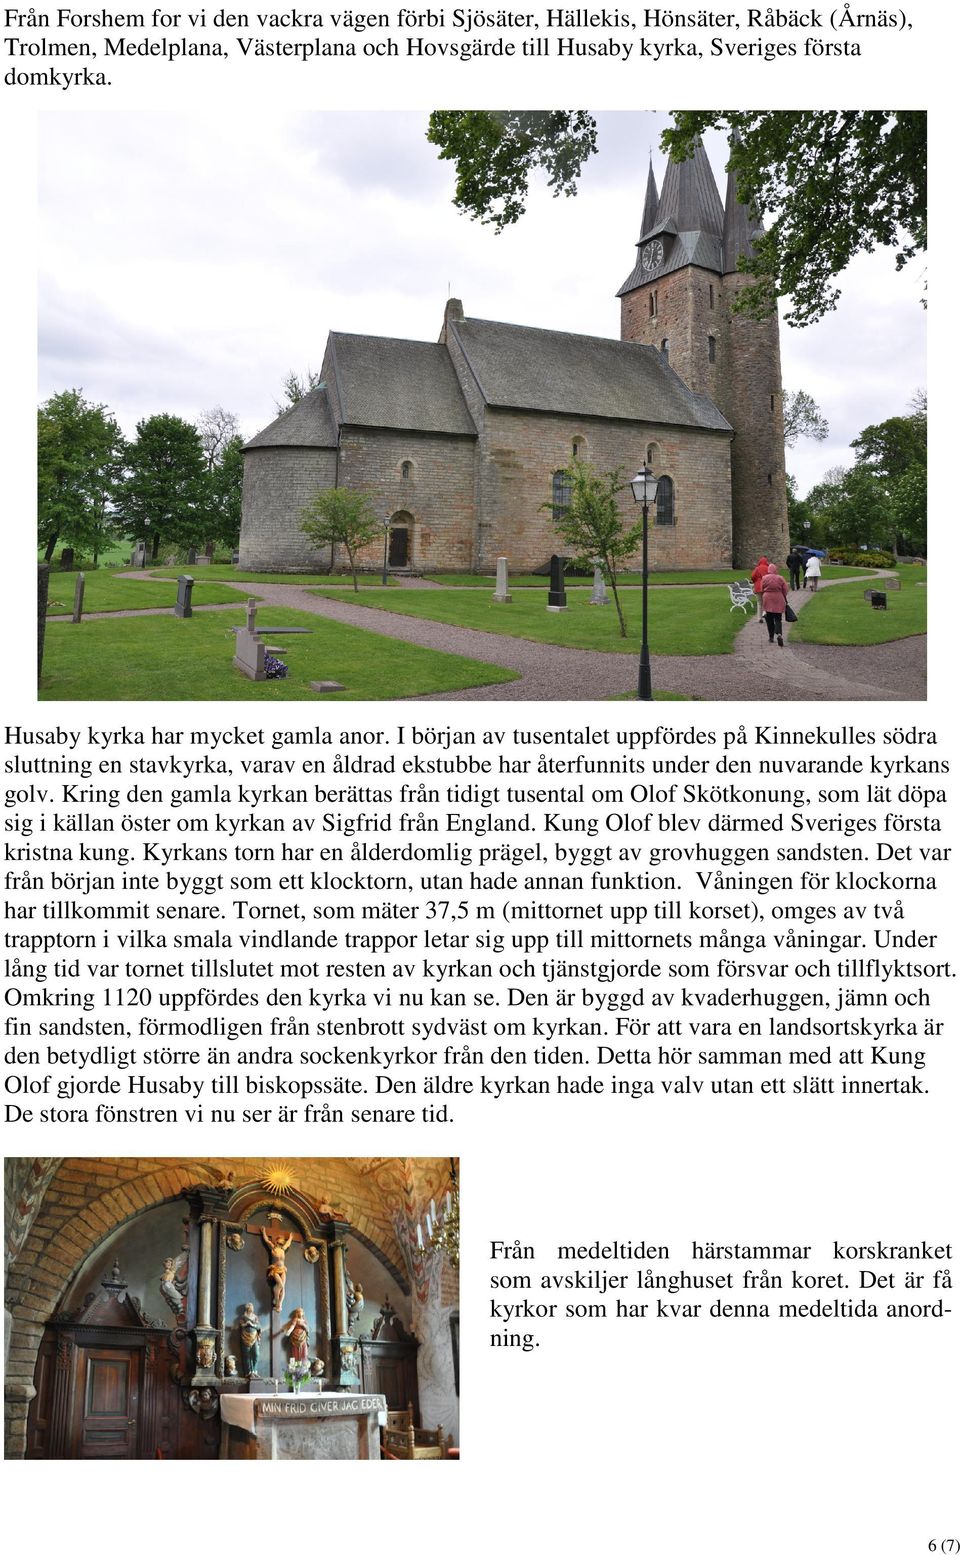 Kring den gamla kyrkan berättas från tidigt tusental om Olof Skötkonung, som lät döpa sig i källan öster om kyrkan av Sigfrid från England. Kung Olof blev därmed Sveriges första kristna kung.